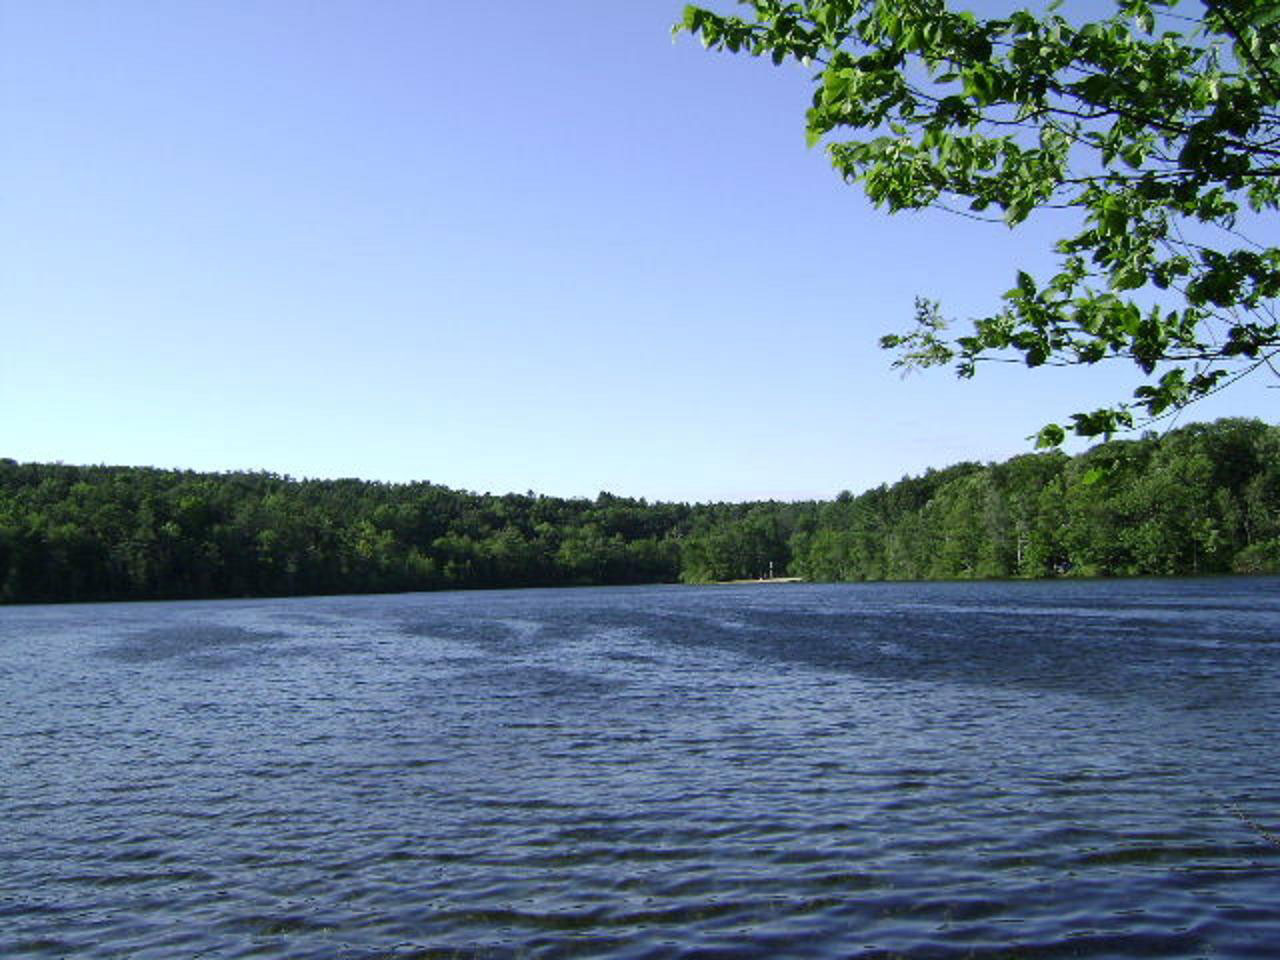 A pretty lake scene